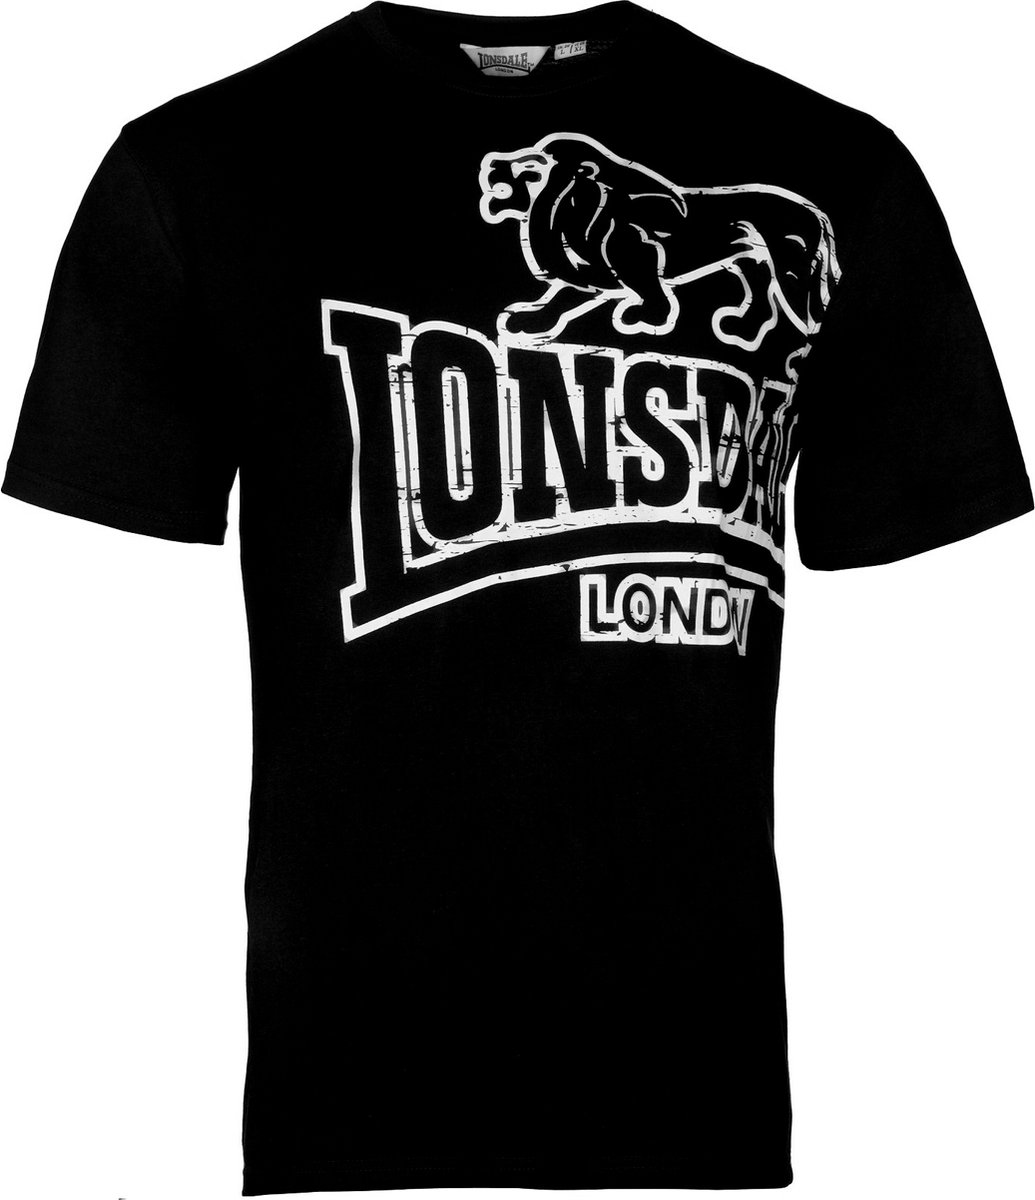 Lonsdale T-shirt Langsett Zwart - Maat: S